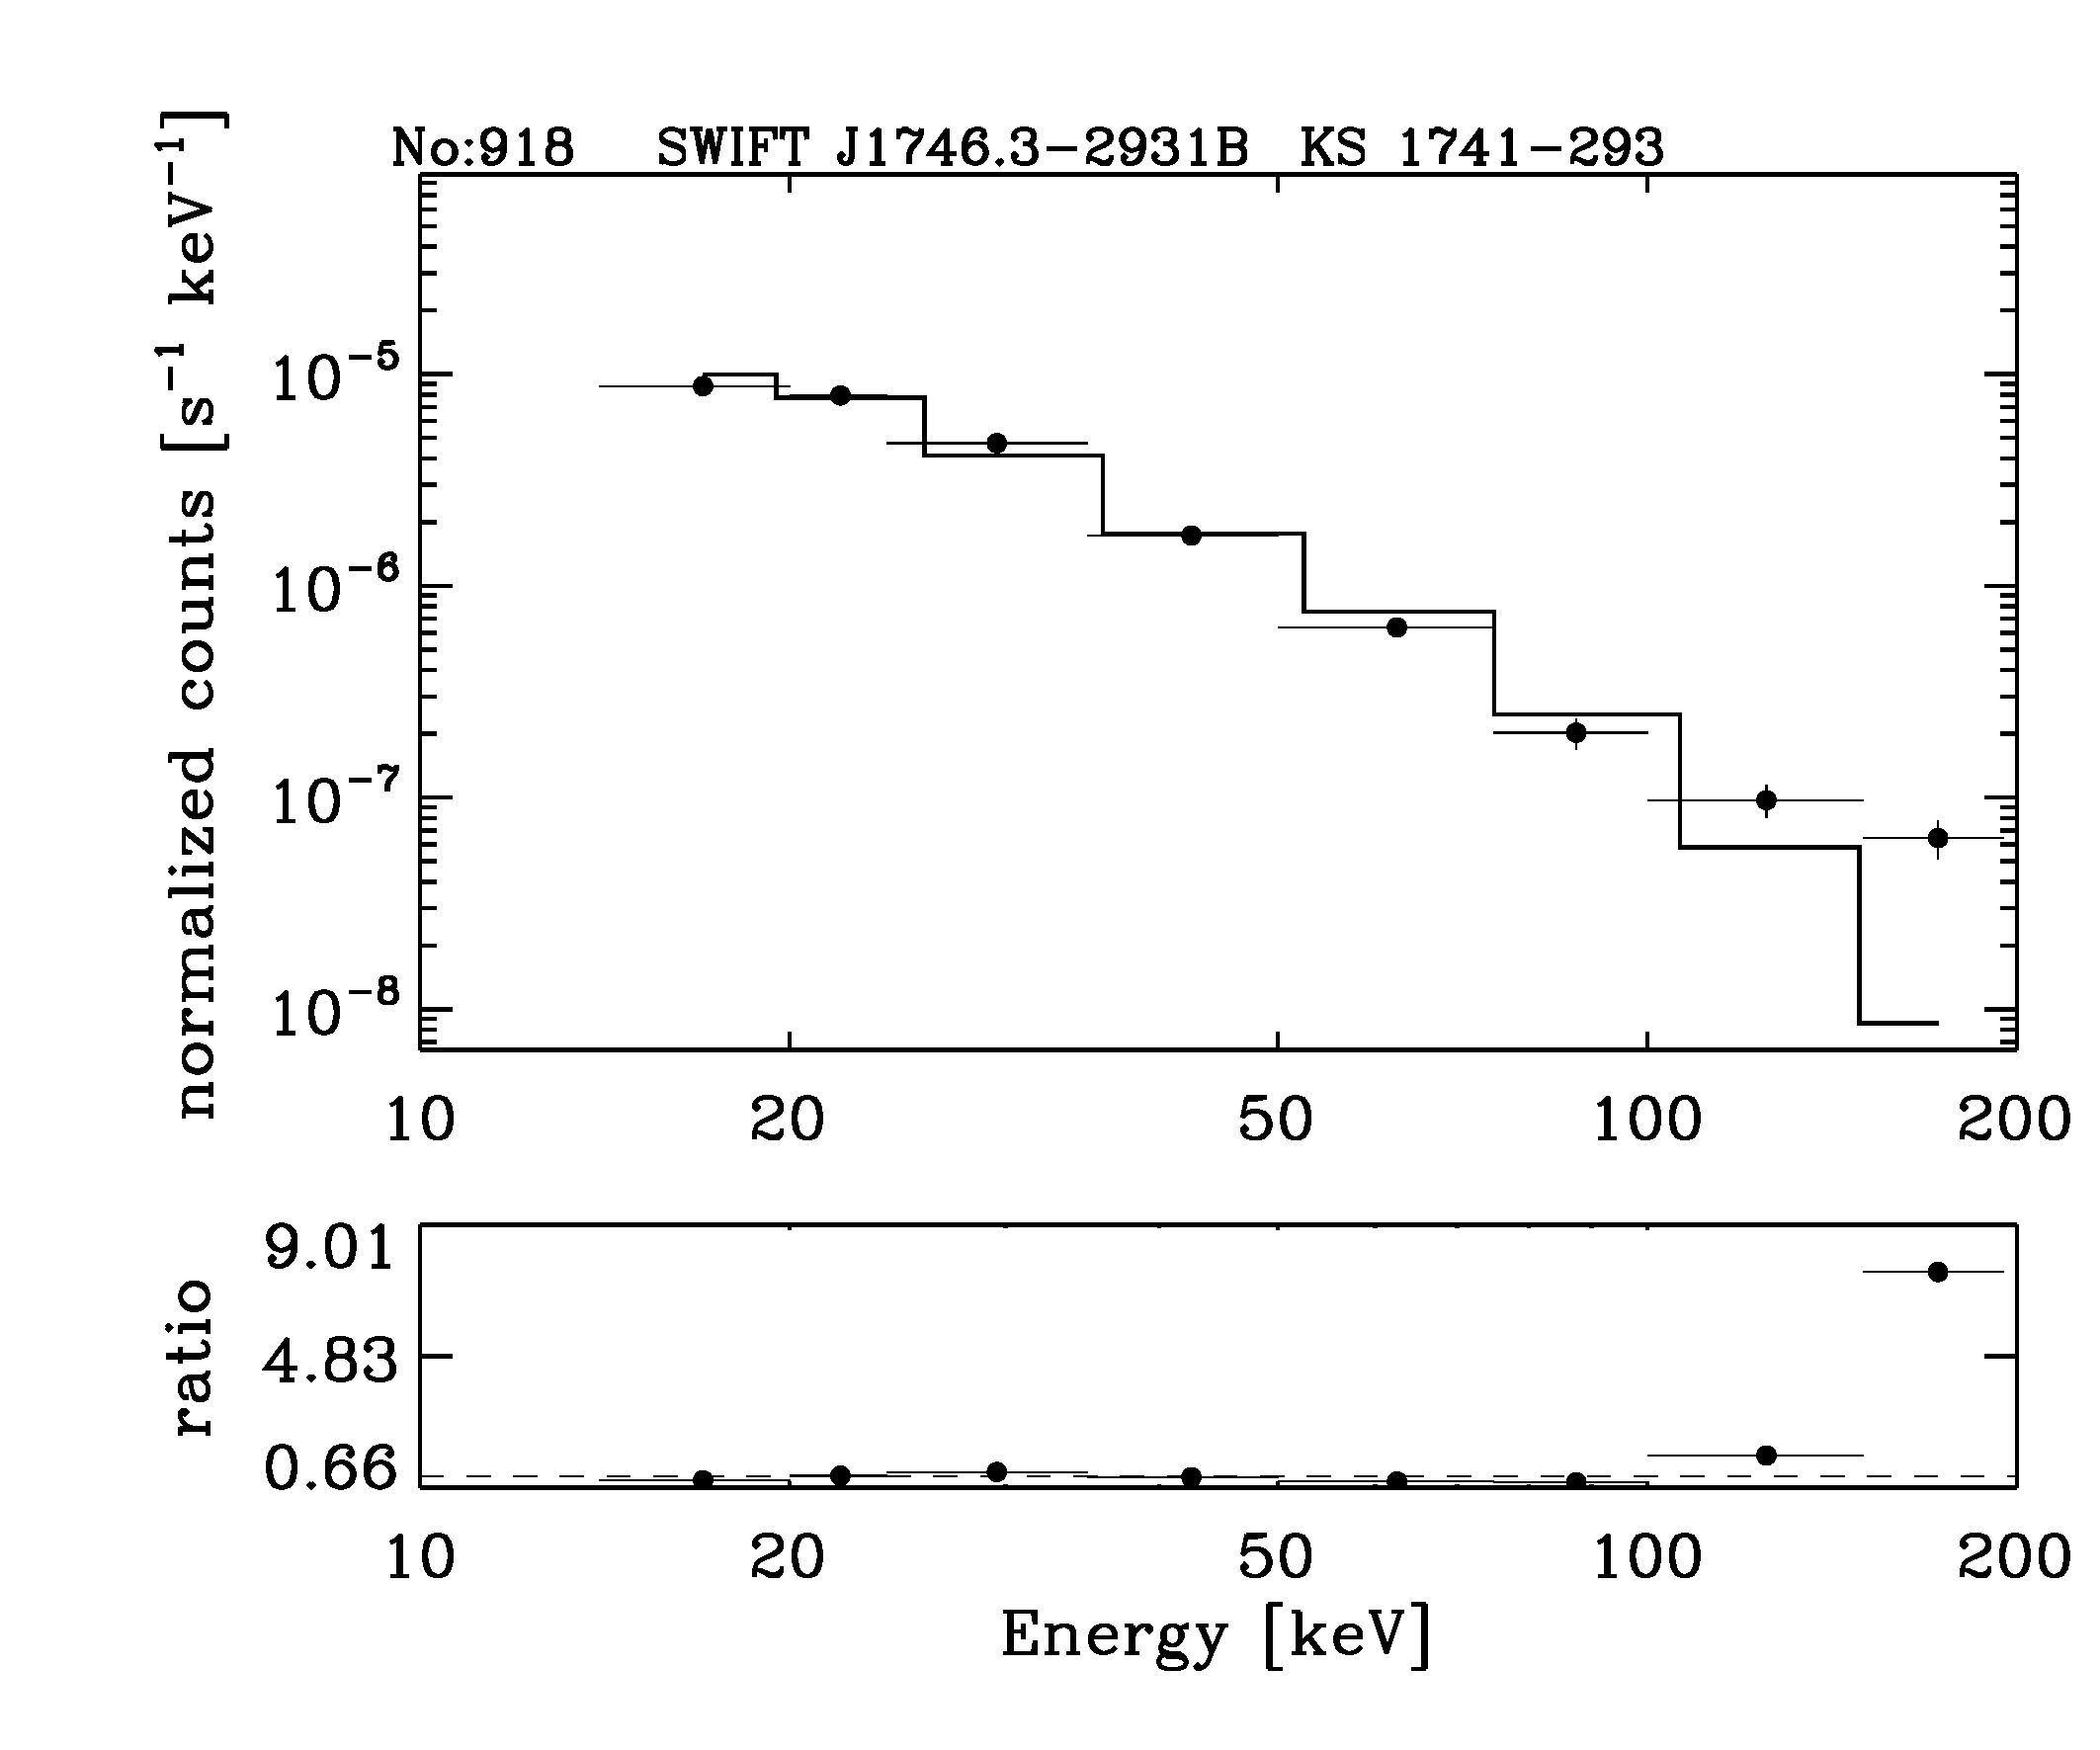 BAT Spectrum for SWIFT J1746.3-2931B